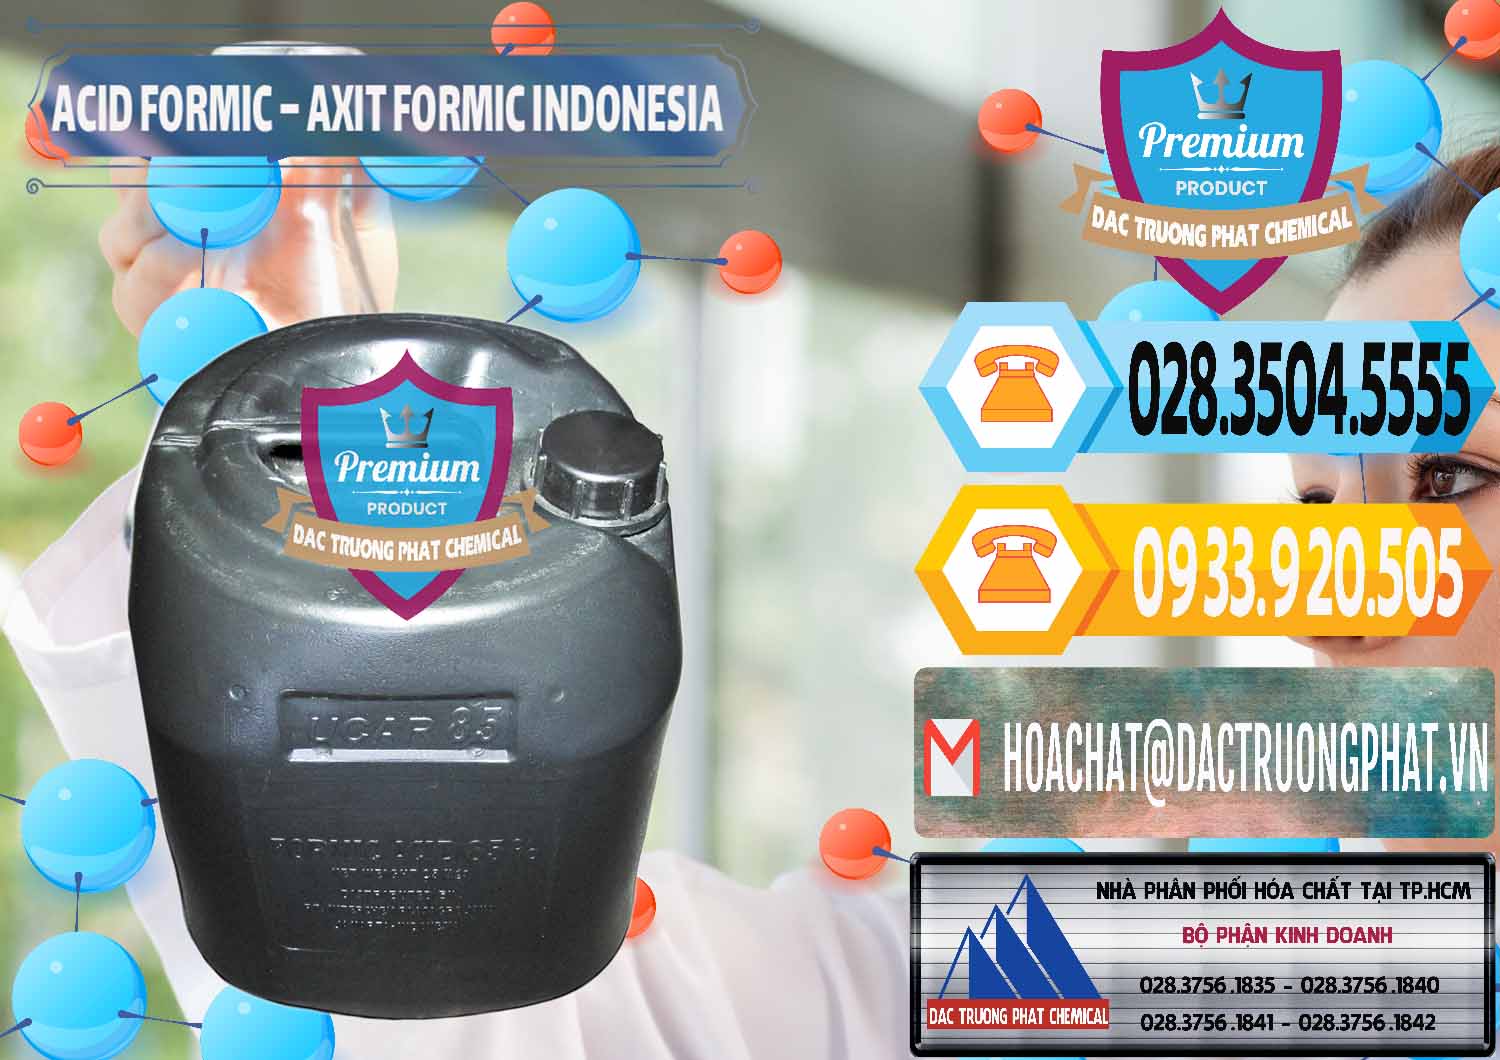 Cty bán ( cung ứng ) Acid Formic - Axit Formic Indonesia - 0026 - Đơn vị kinh doanh _ cung cấp hóa chất tại TP.HCM - hoachattayrua.net